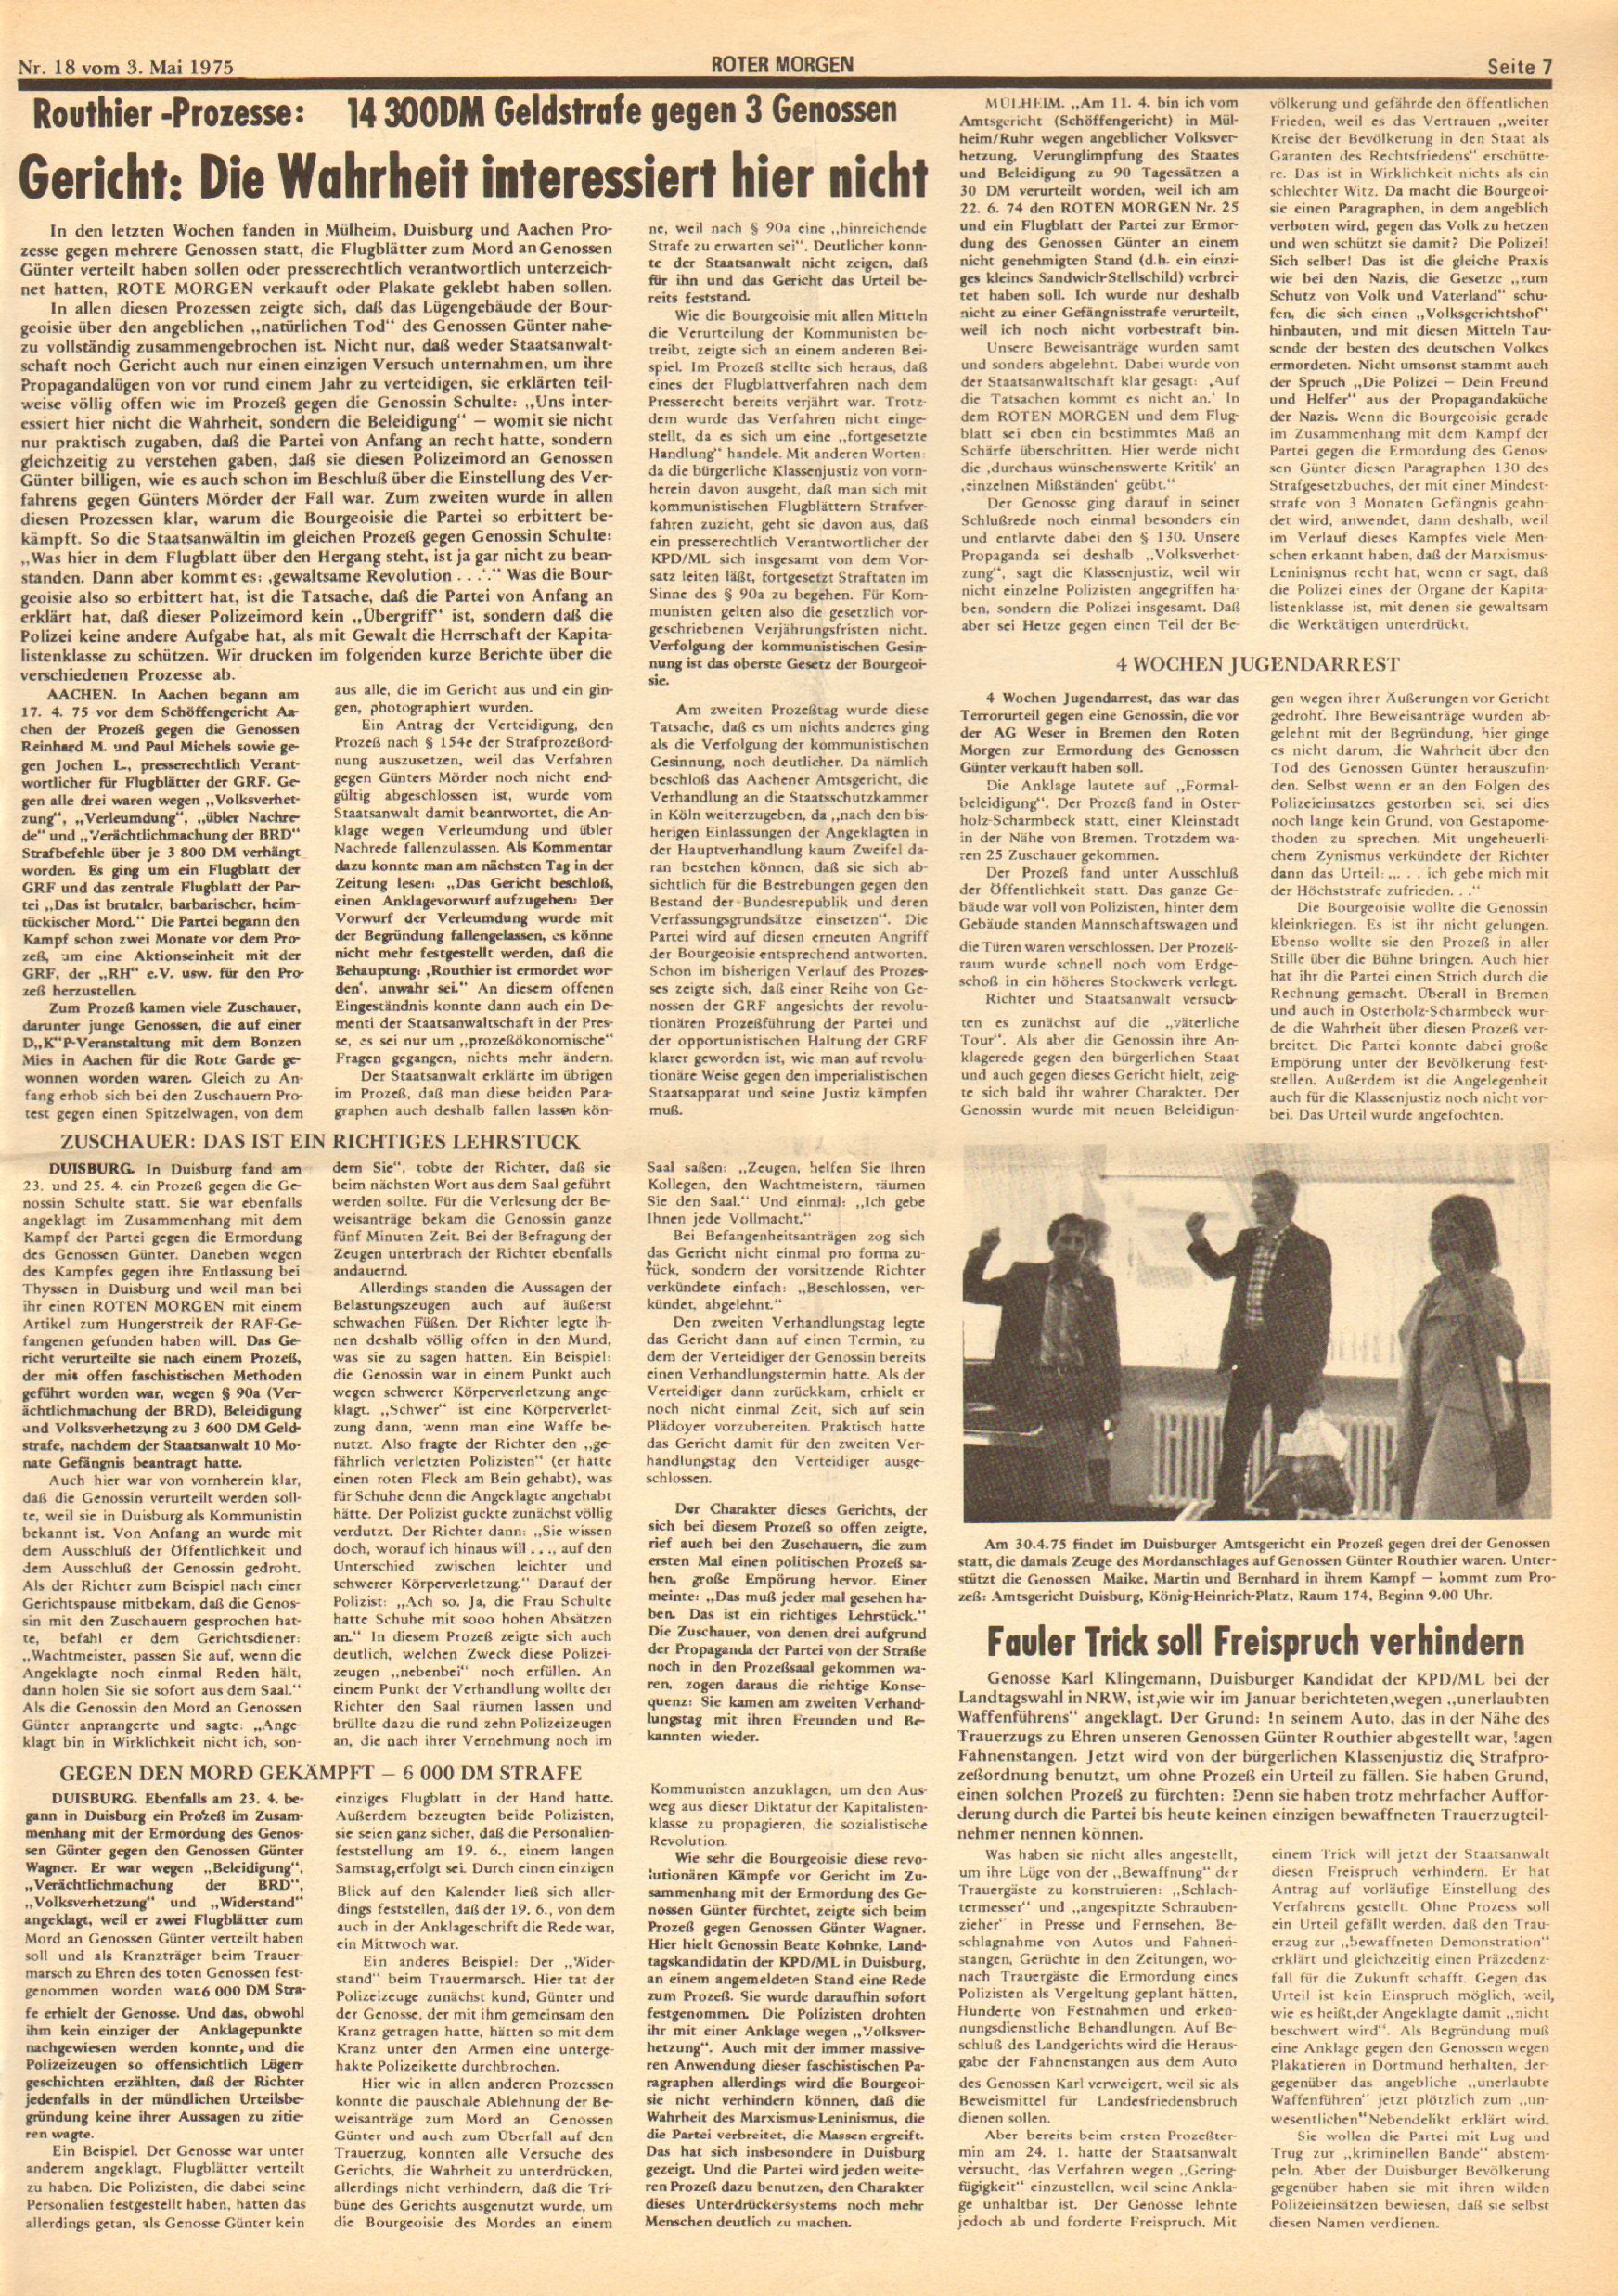 Roter Morgen, 9. Jg., 3. Mai 1975, Nr. 18, Seite 7